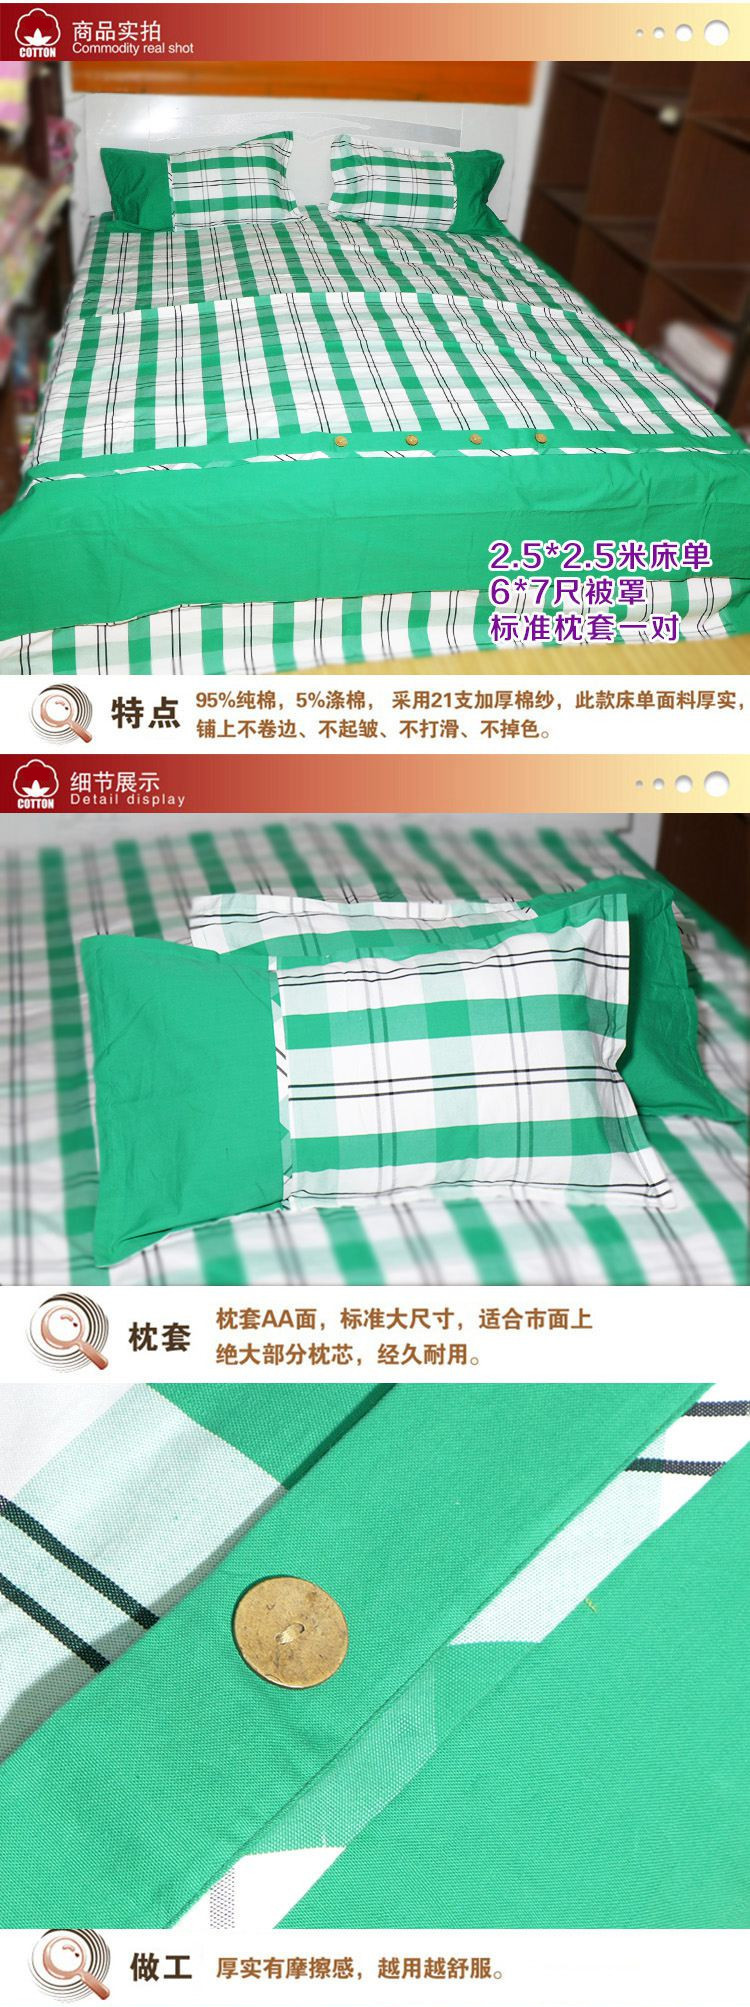 锦绣粗布优质拼版纯棉四件套2.5*2.5米床单，6*7尺被罩，标准枕套一对